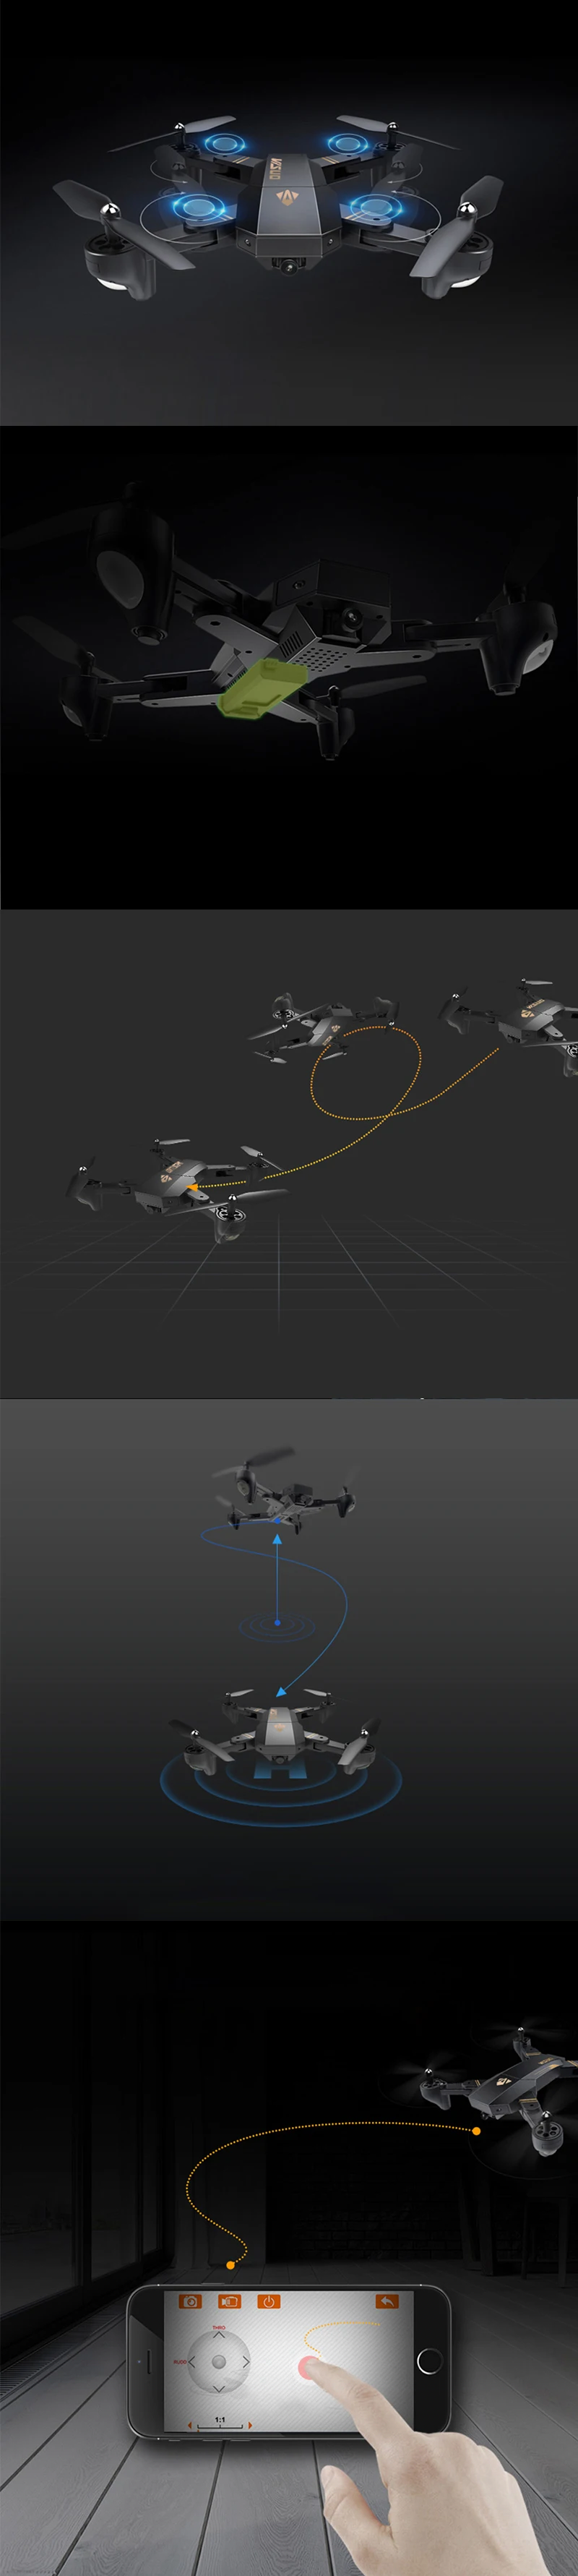 XS809W зависания racing вертолет Дроны с камеры hd drone profissional fpv quadcopter самолета световой забавная игрушка для мальчиков